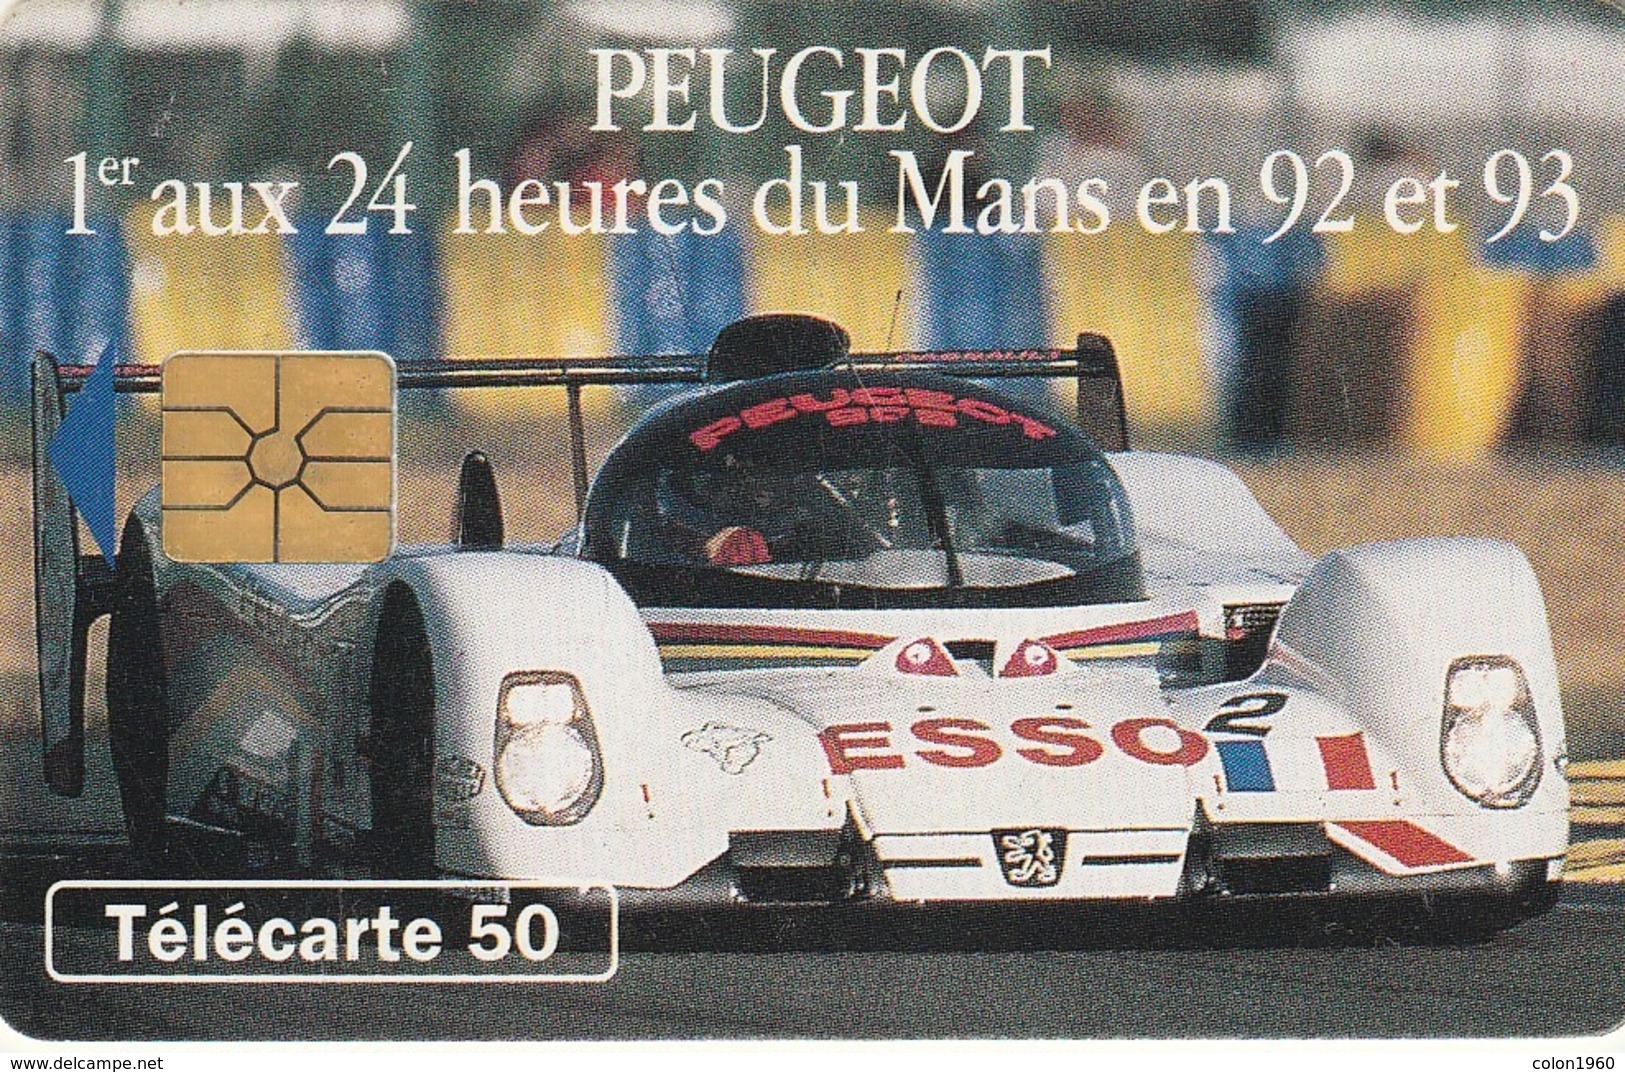 FRANCIA. Peugeot 905 1 - Voiture De Jour. With 2nd Logo Moreno. 50U. 0393. 07/93. (206). - Deportes